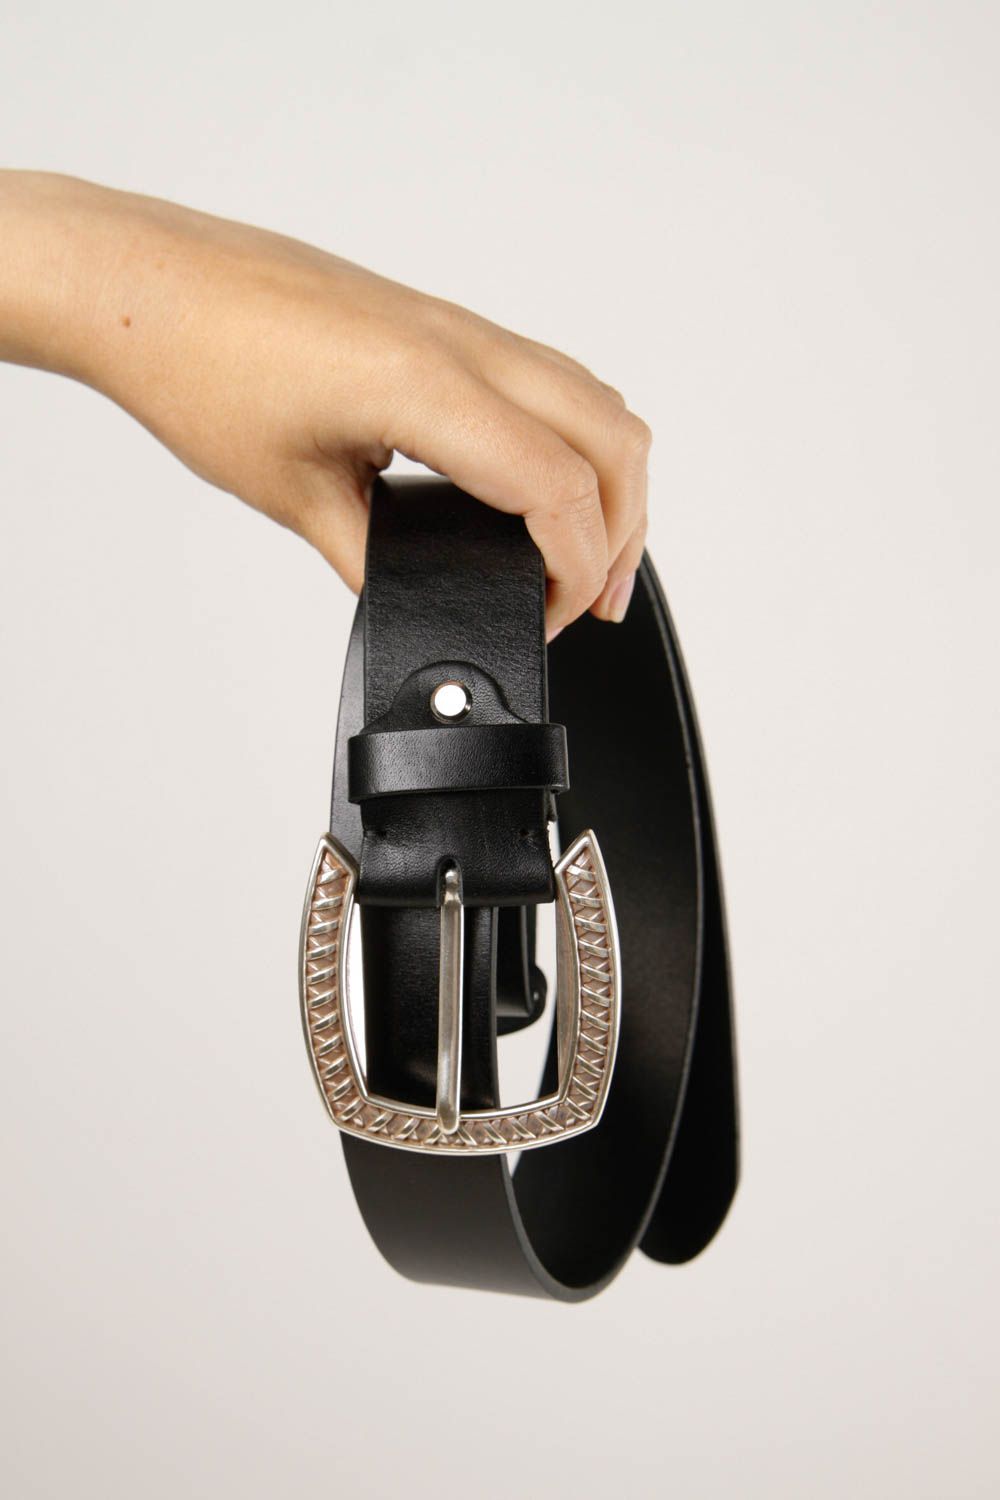 Cinturón de piel hecho a mano color negro accesorio de moda regalo para hombre foto 2